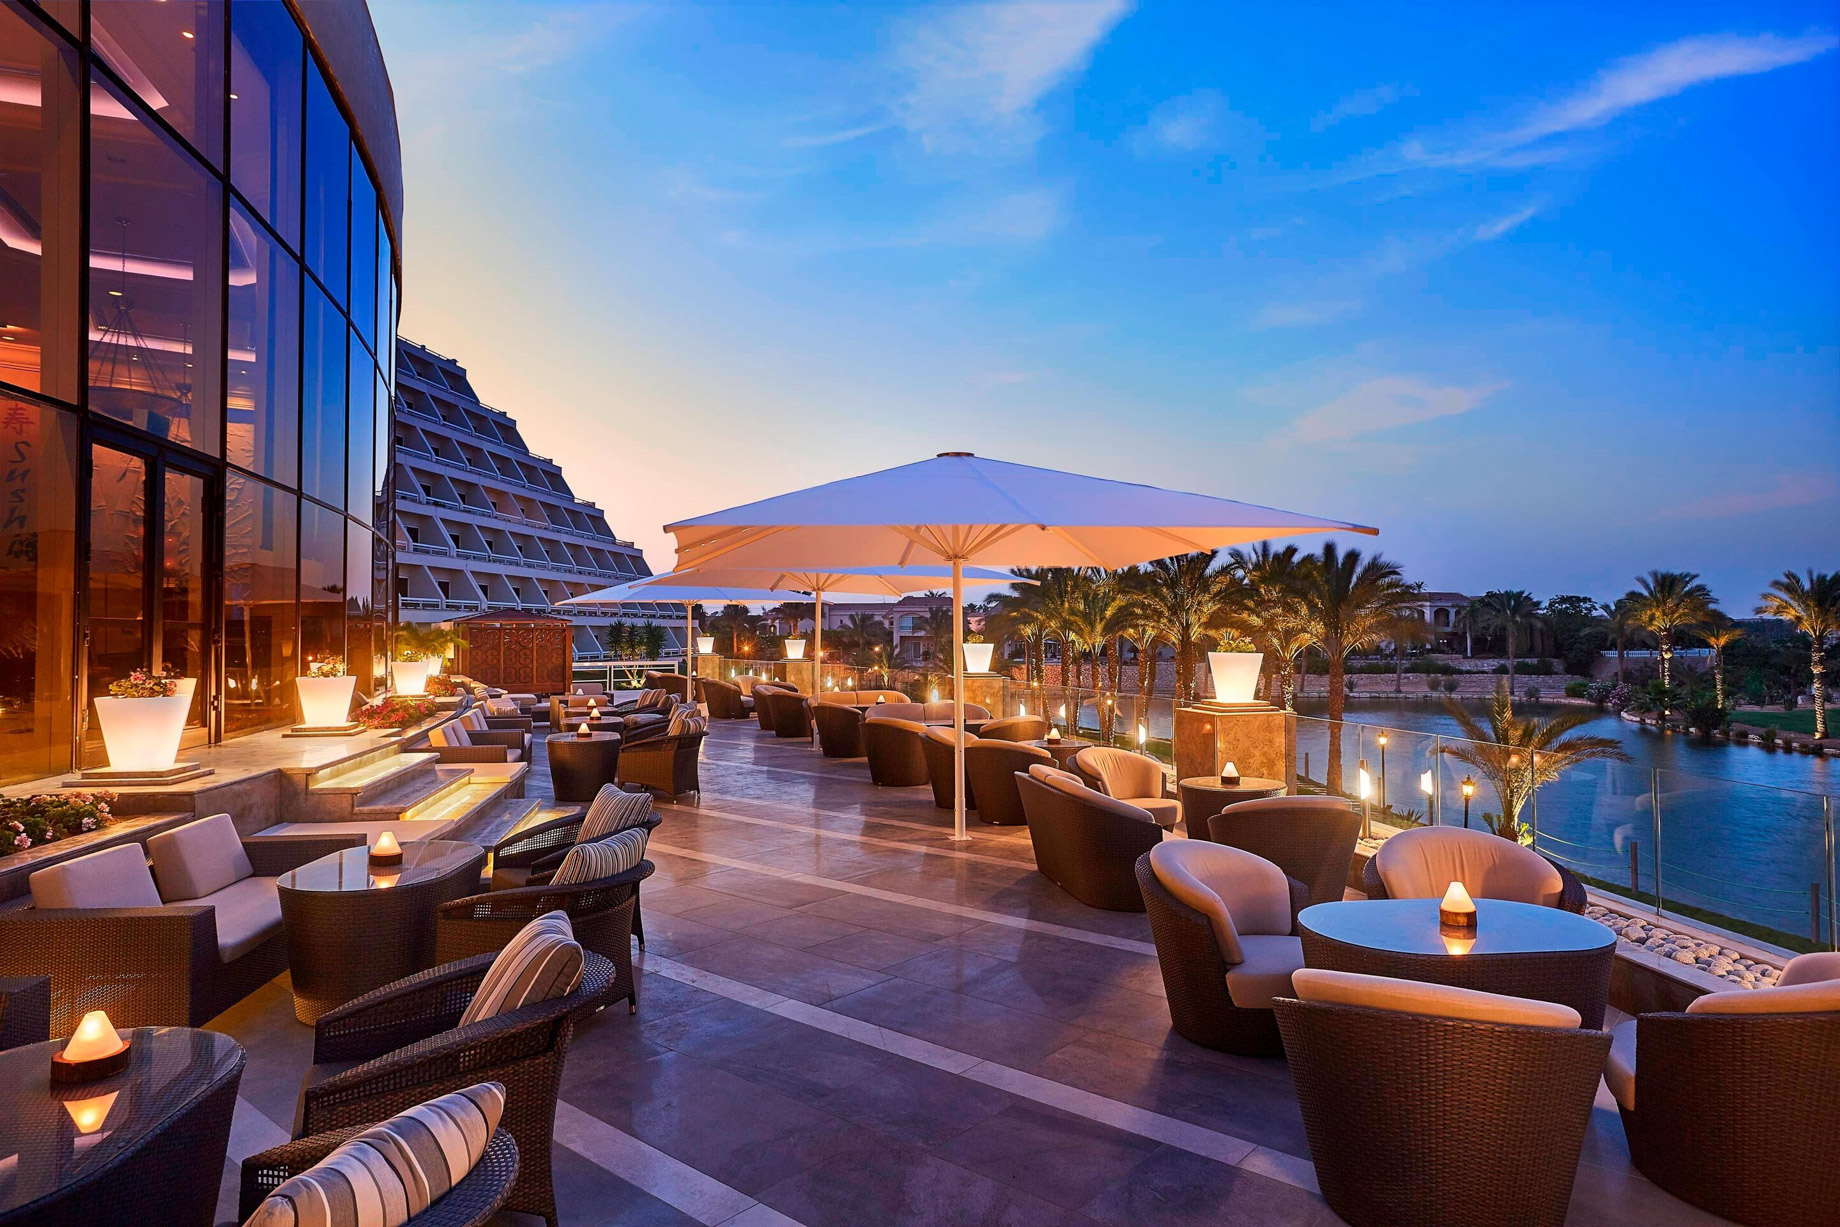 JW Marriott Hotel Cairo – Cairo, Egypt – Plateau Lounge